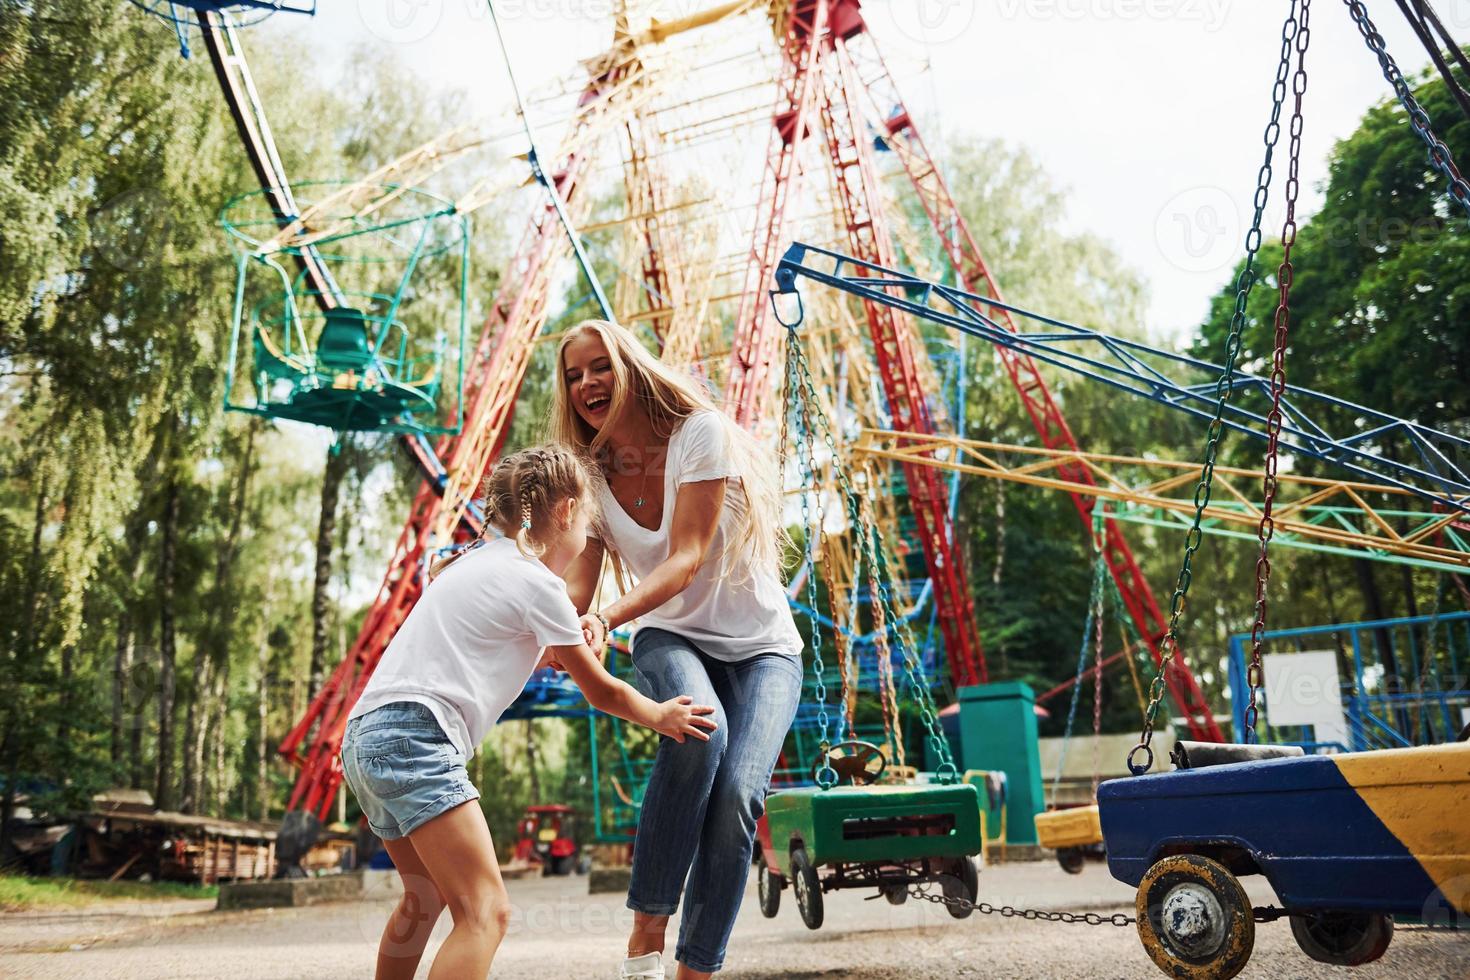 corriendo y jugando. niña alegre su madre se divierten juntos en el parque cerca de las atracciones foto